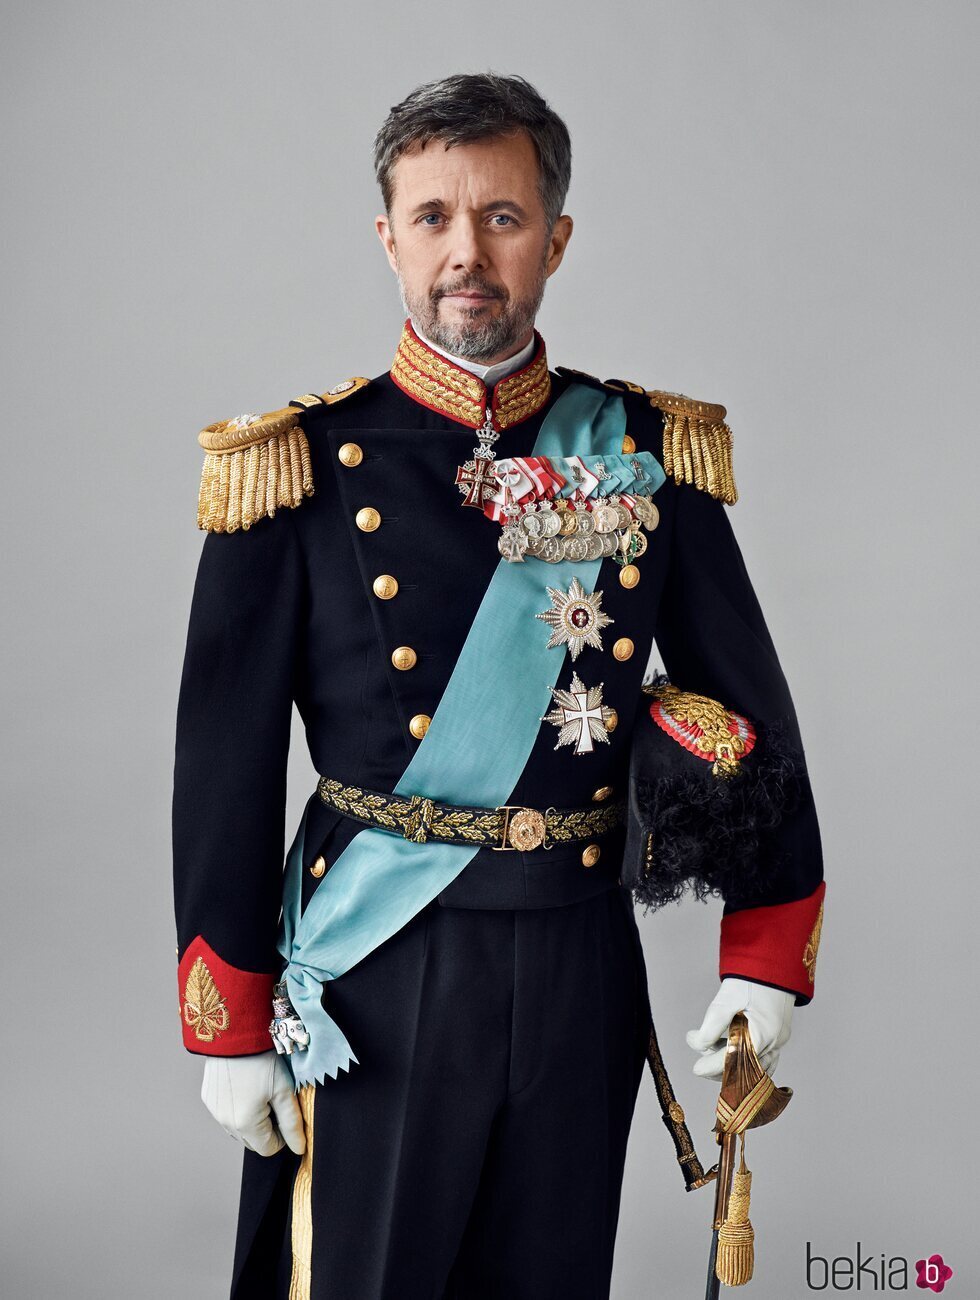 Foto oficial de Federico de Dinamarca con uniforme de gala